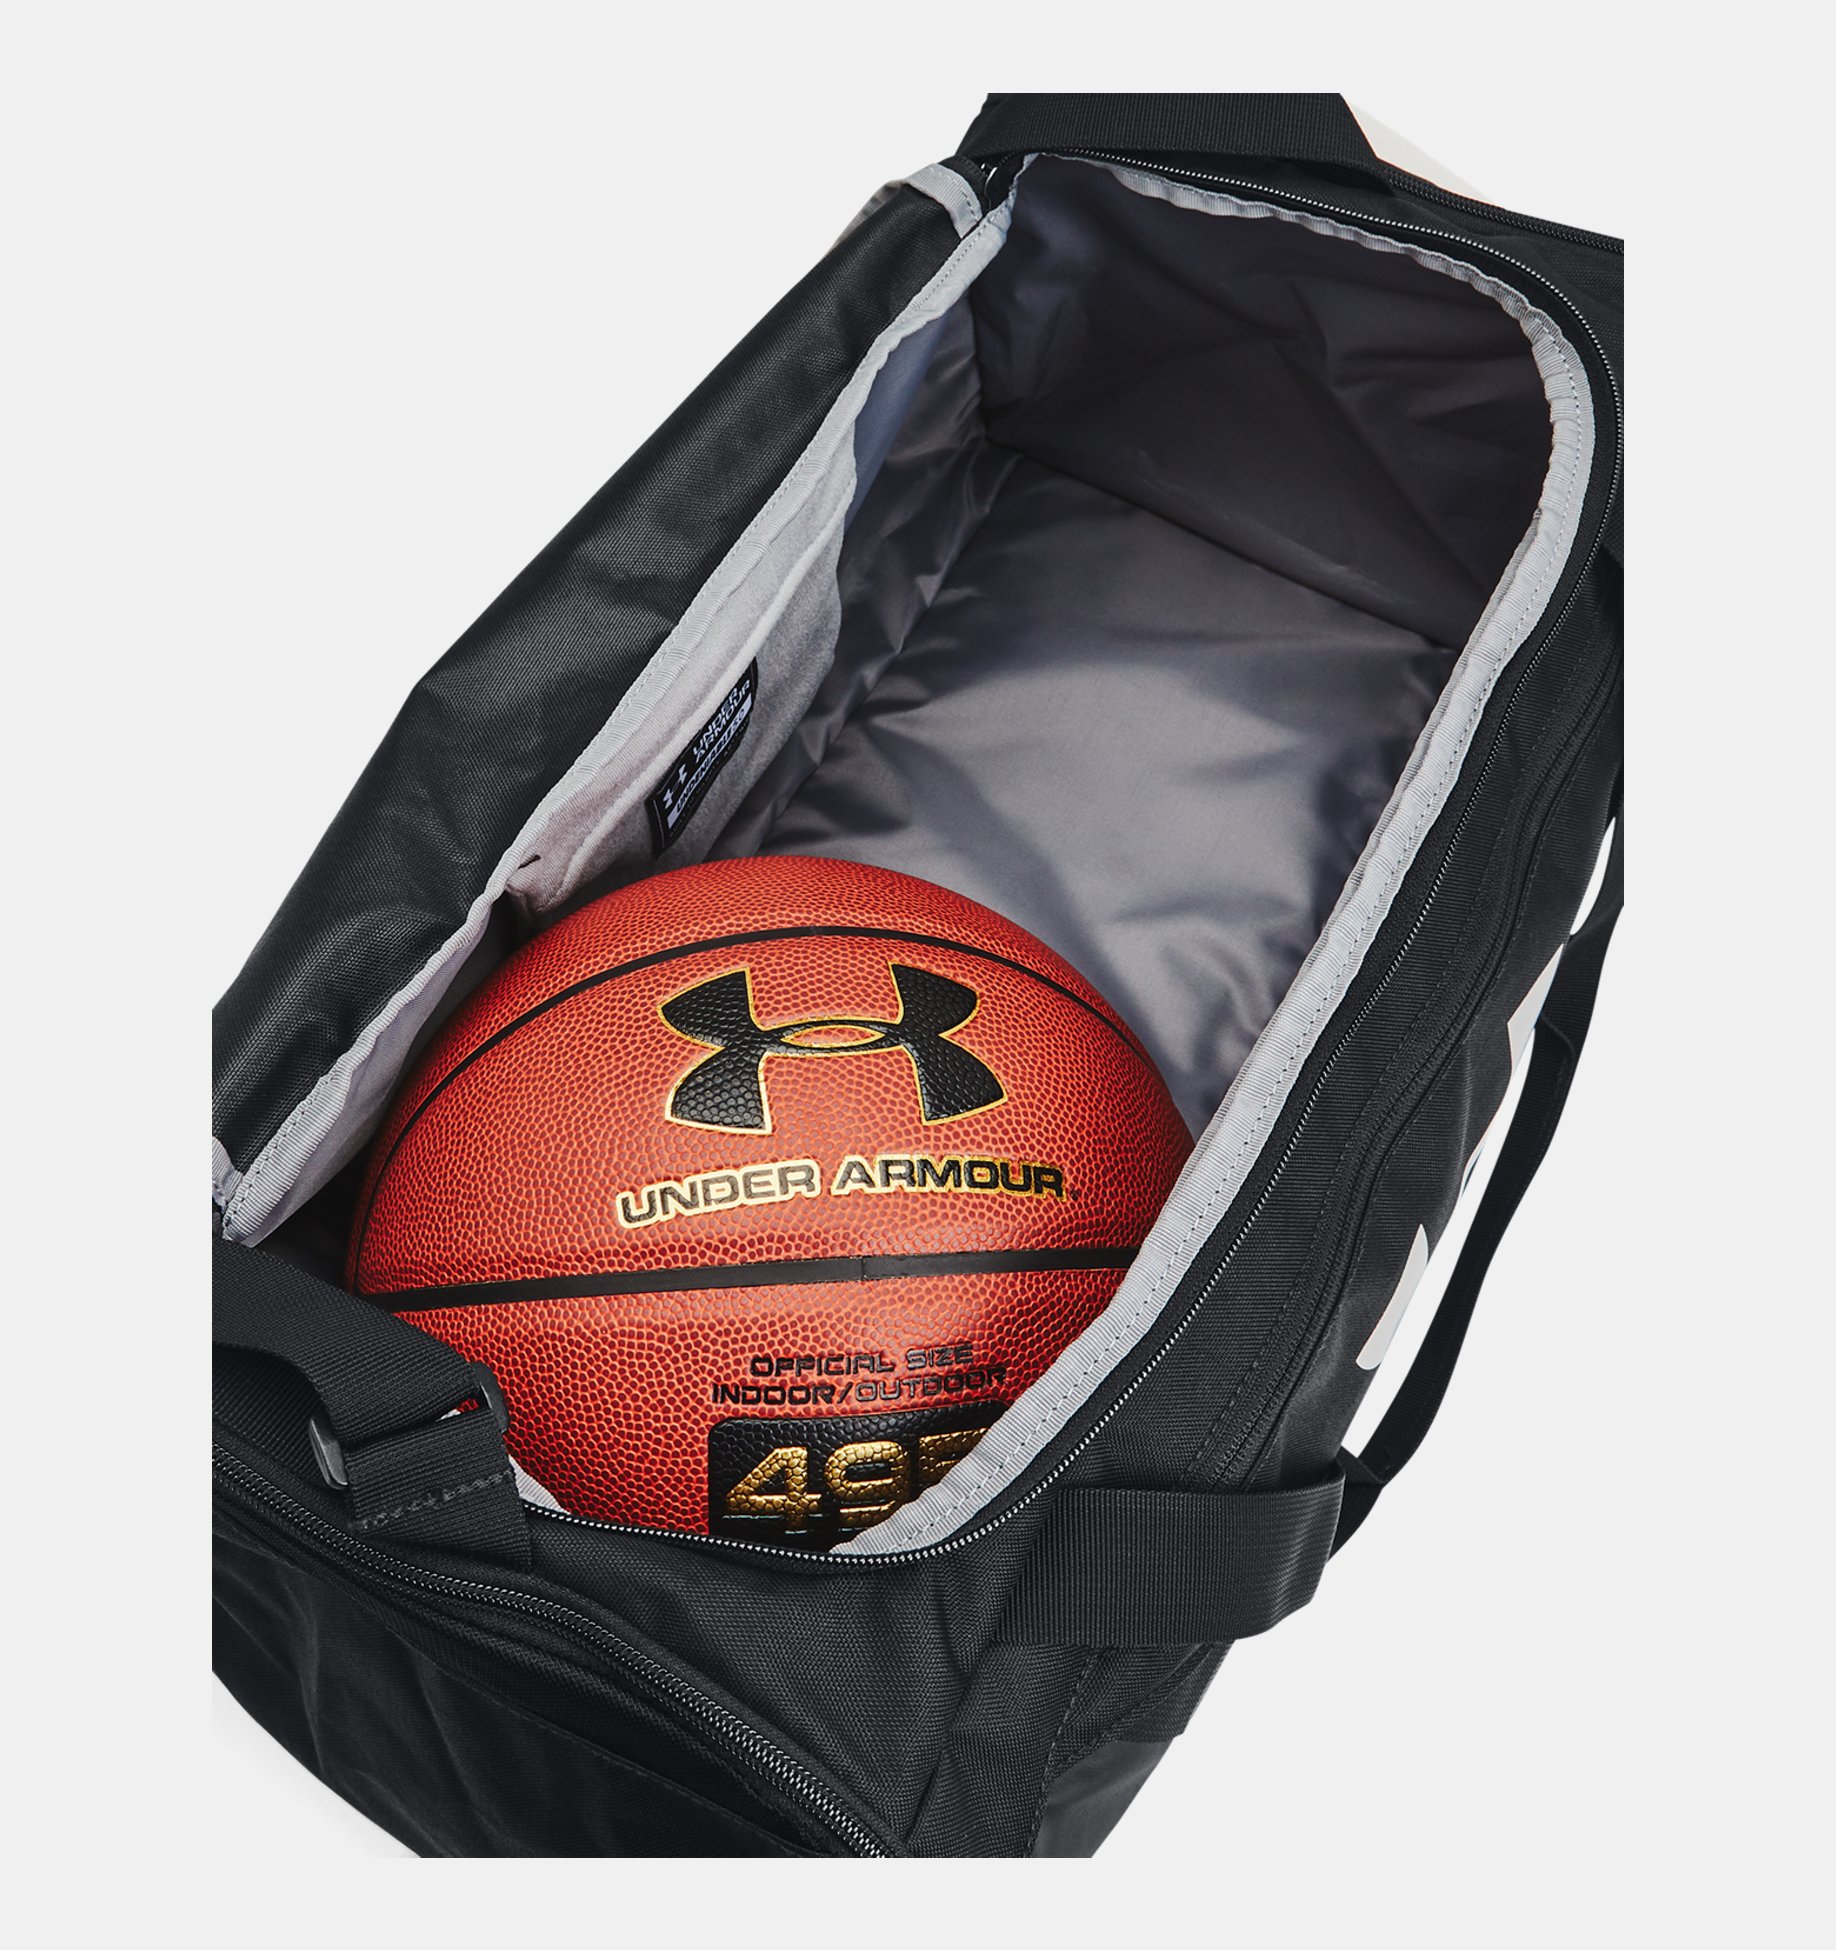 언더아머 Underarmour UA Undeniable 5.0 Small Duffle Bag